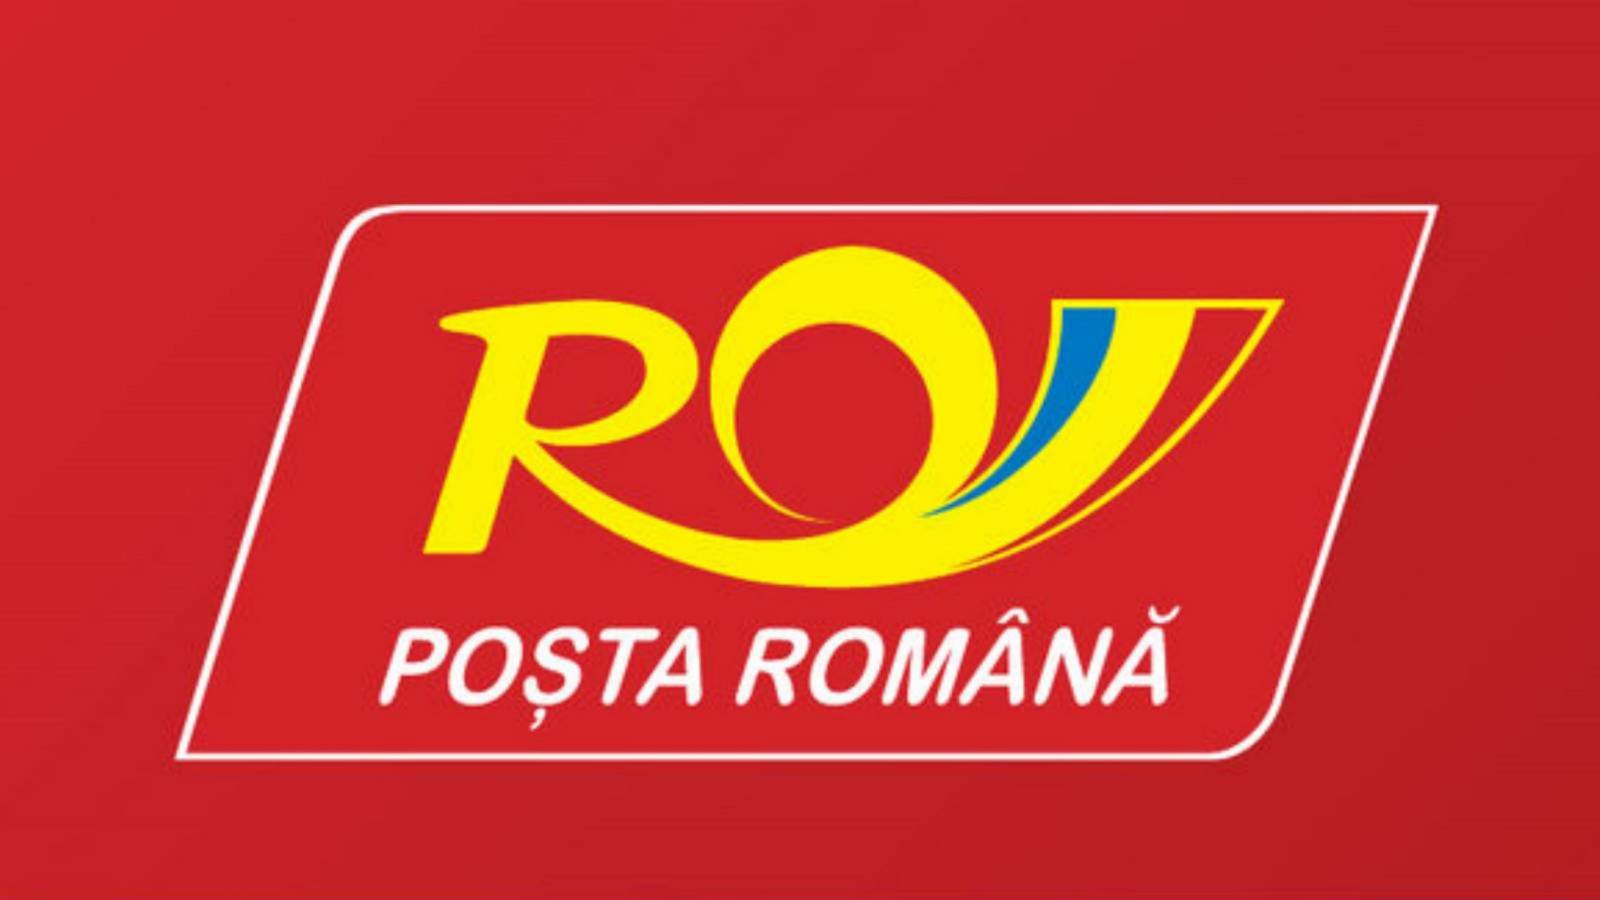 Romanian Post ATTENZIONE, messaggio molto importante per i romeni